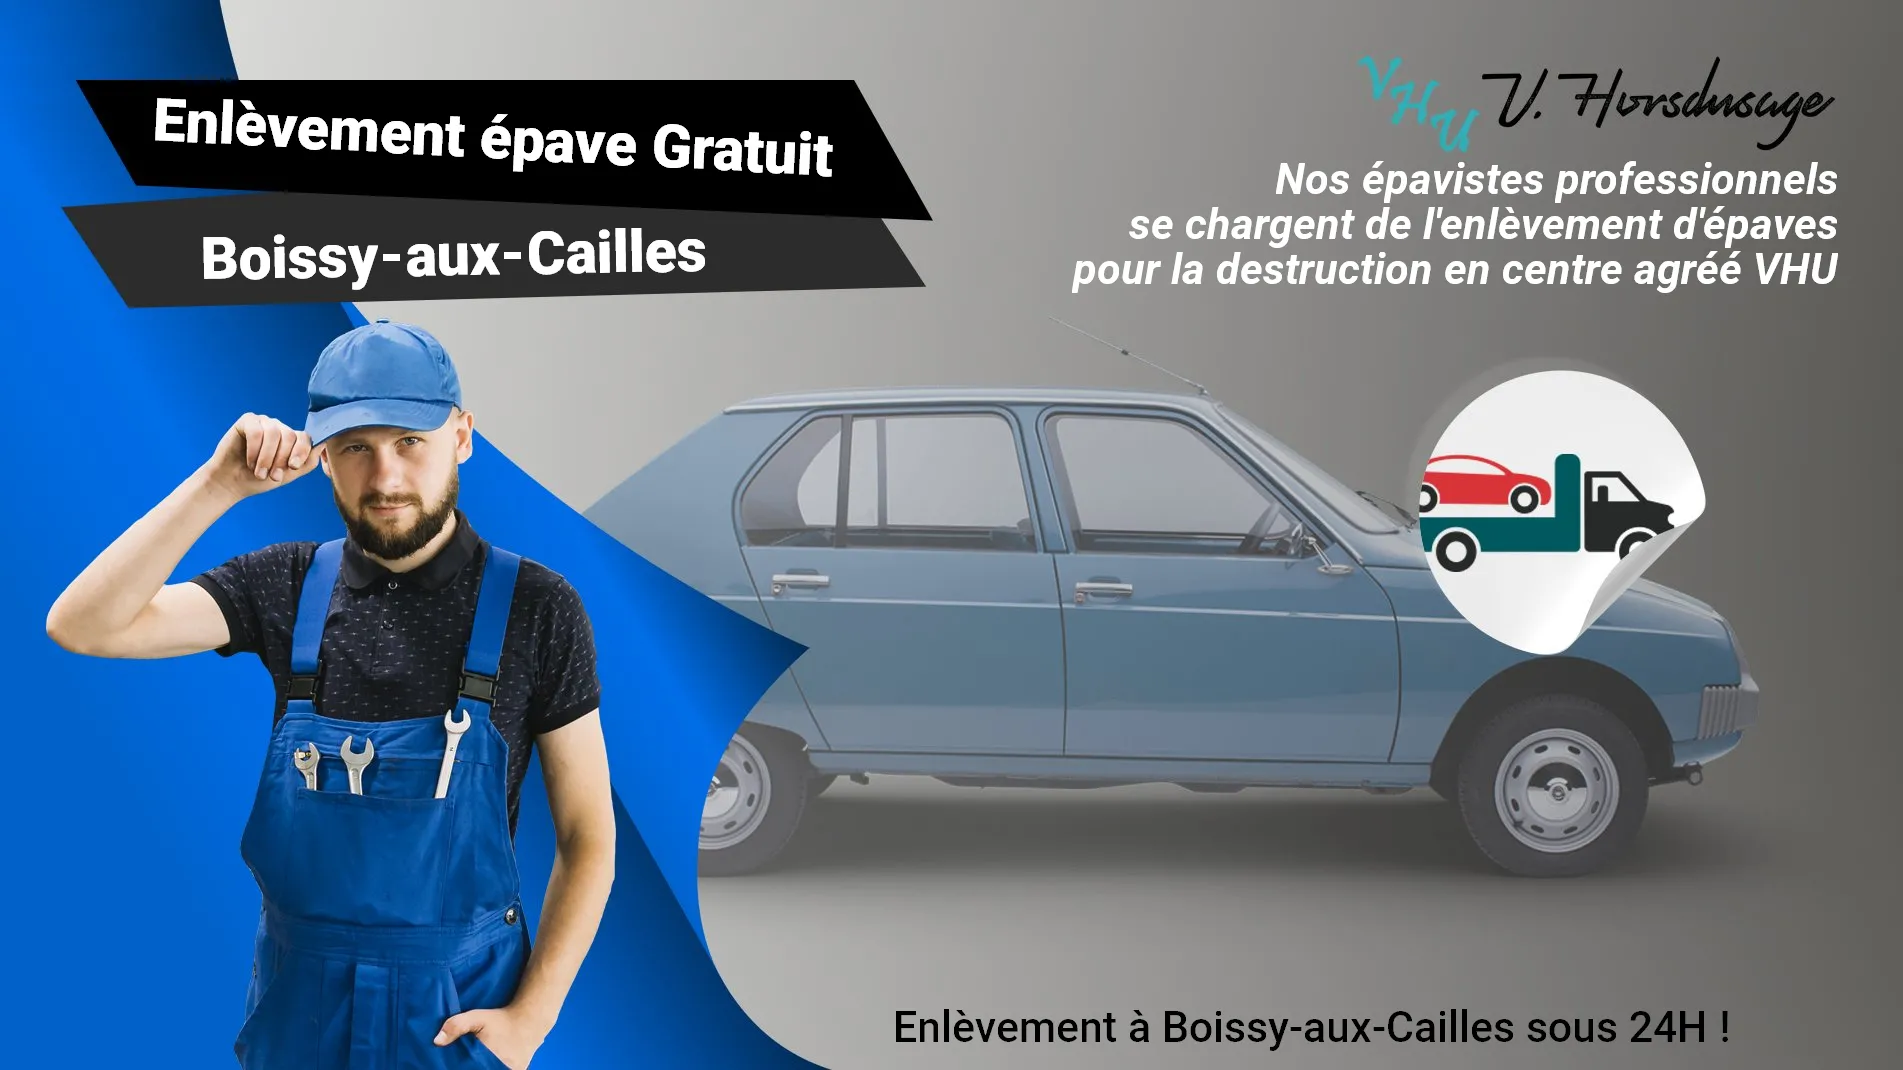 Pour un enlèvement gratuit à Boissy-aux-Cailles, contactez nos épavistes agréé VHU